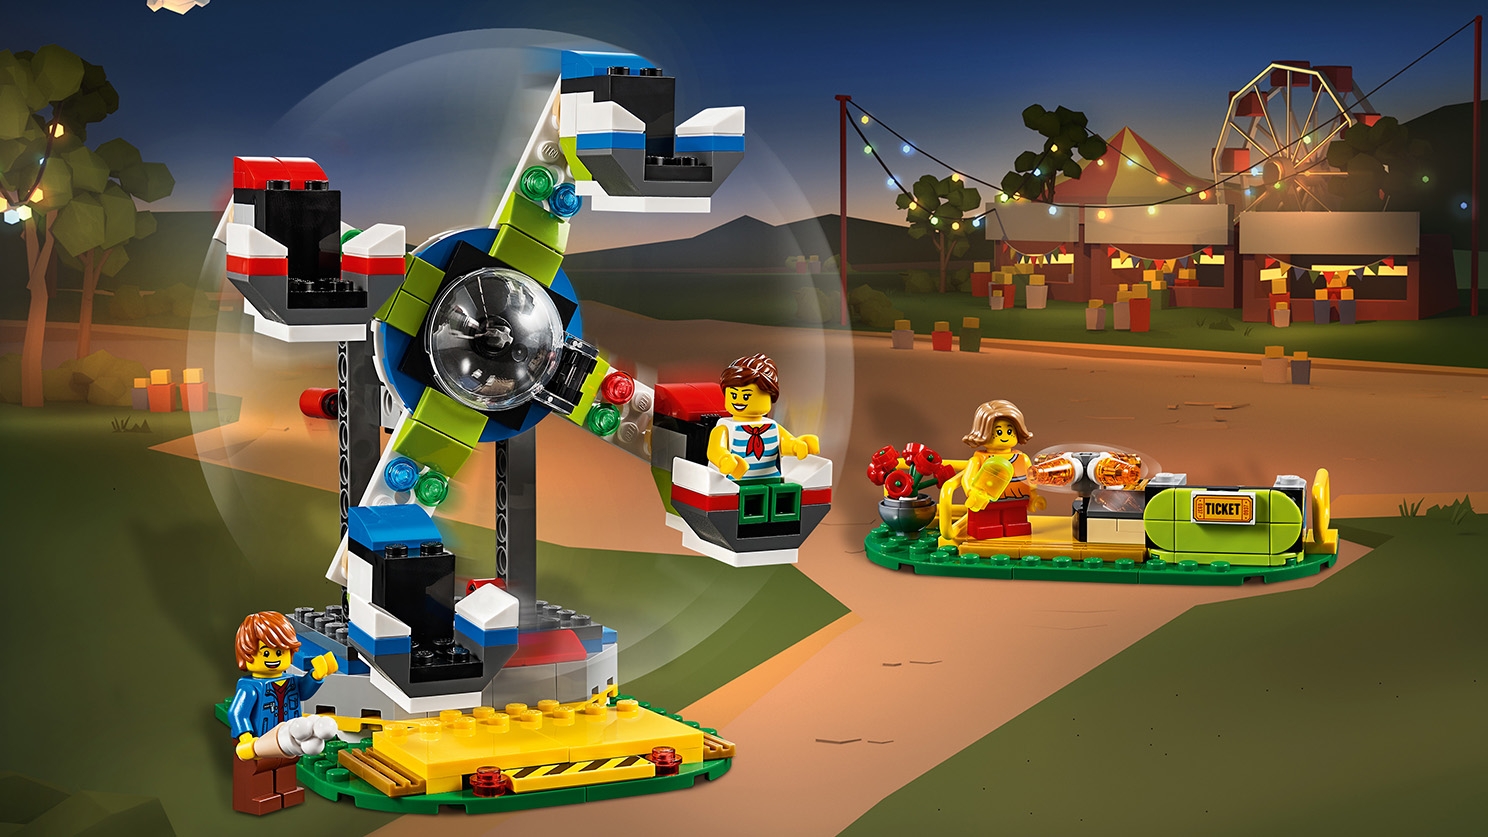 遊園地のスペースライド 31095 - レゴ®クリエイターセット - LEGO.com 